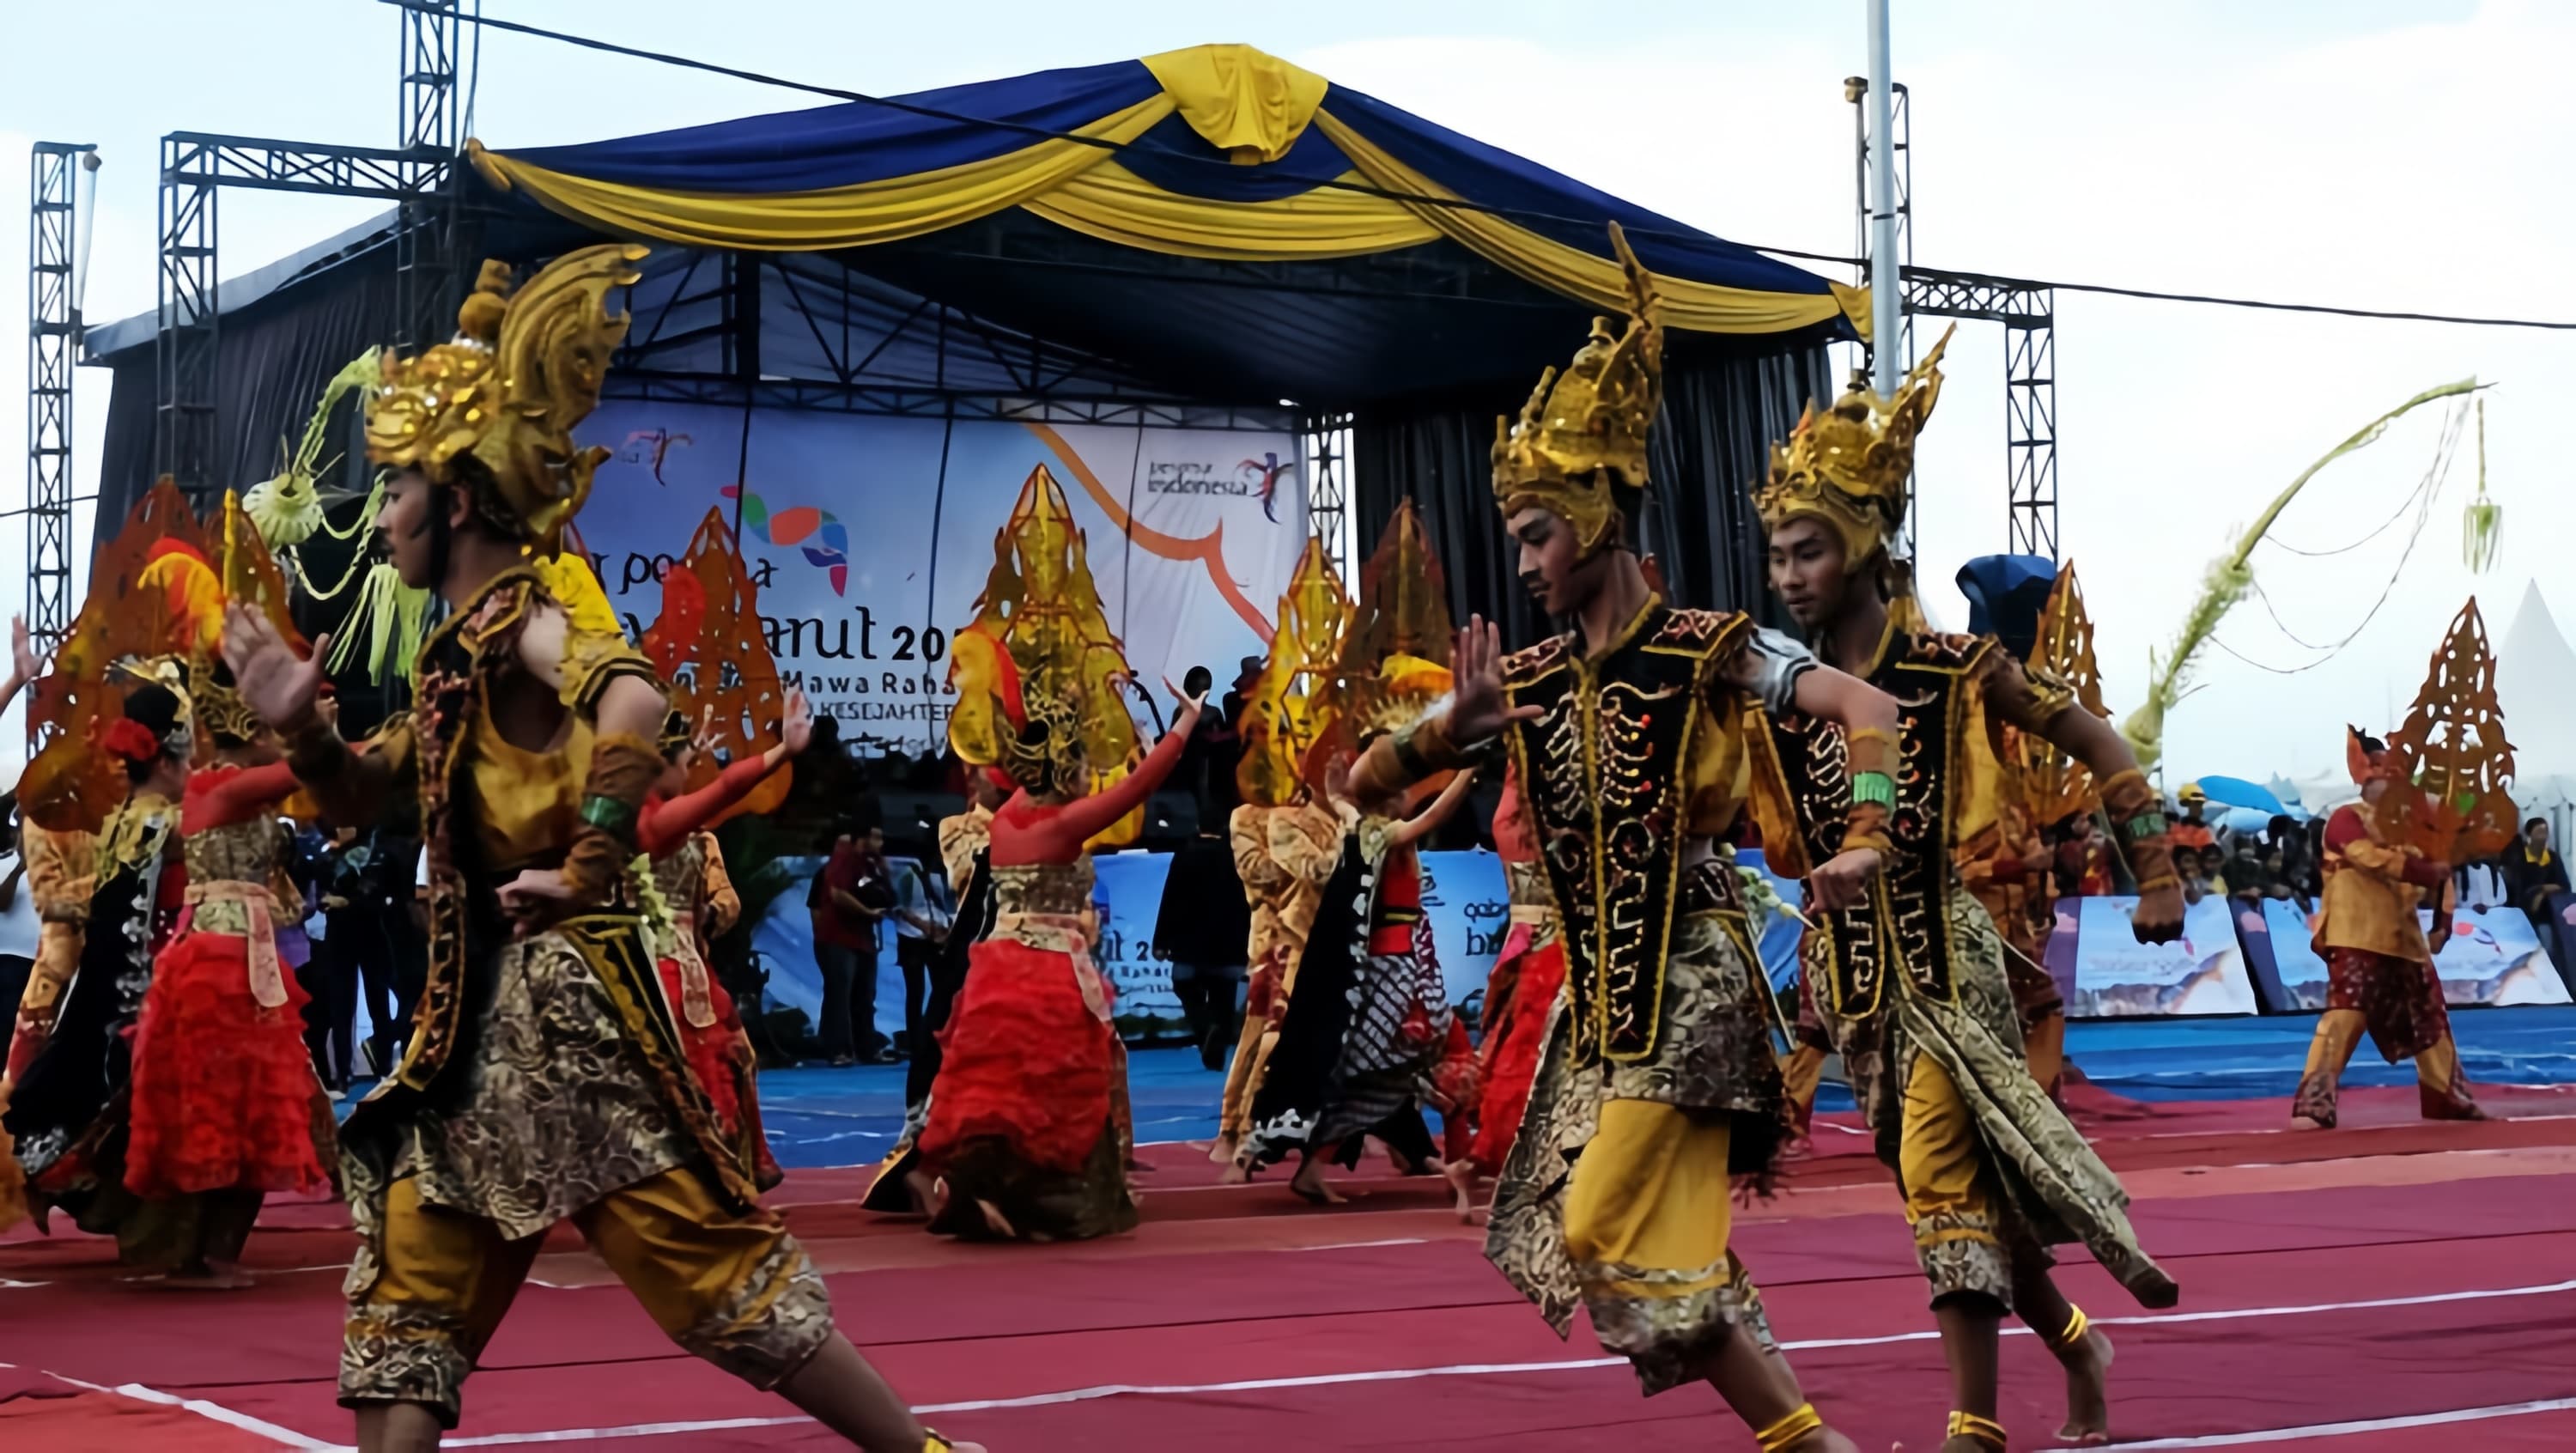 Garut culture festival siap meriahkan hari jadi ke-207 kabupaten garut